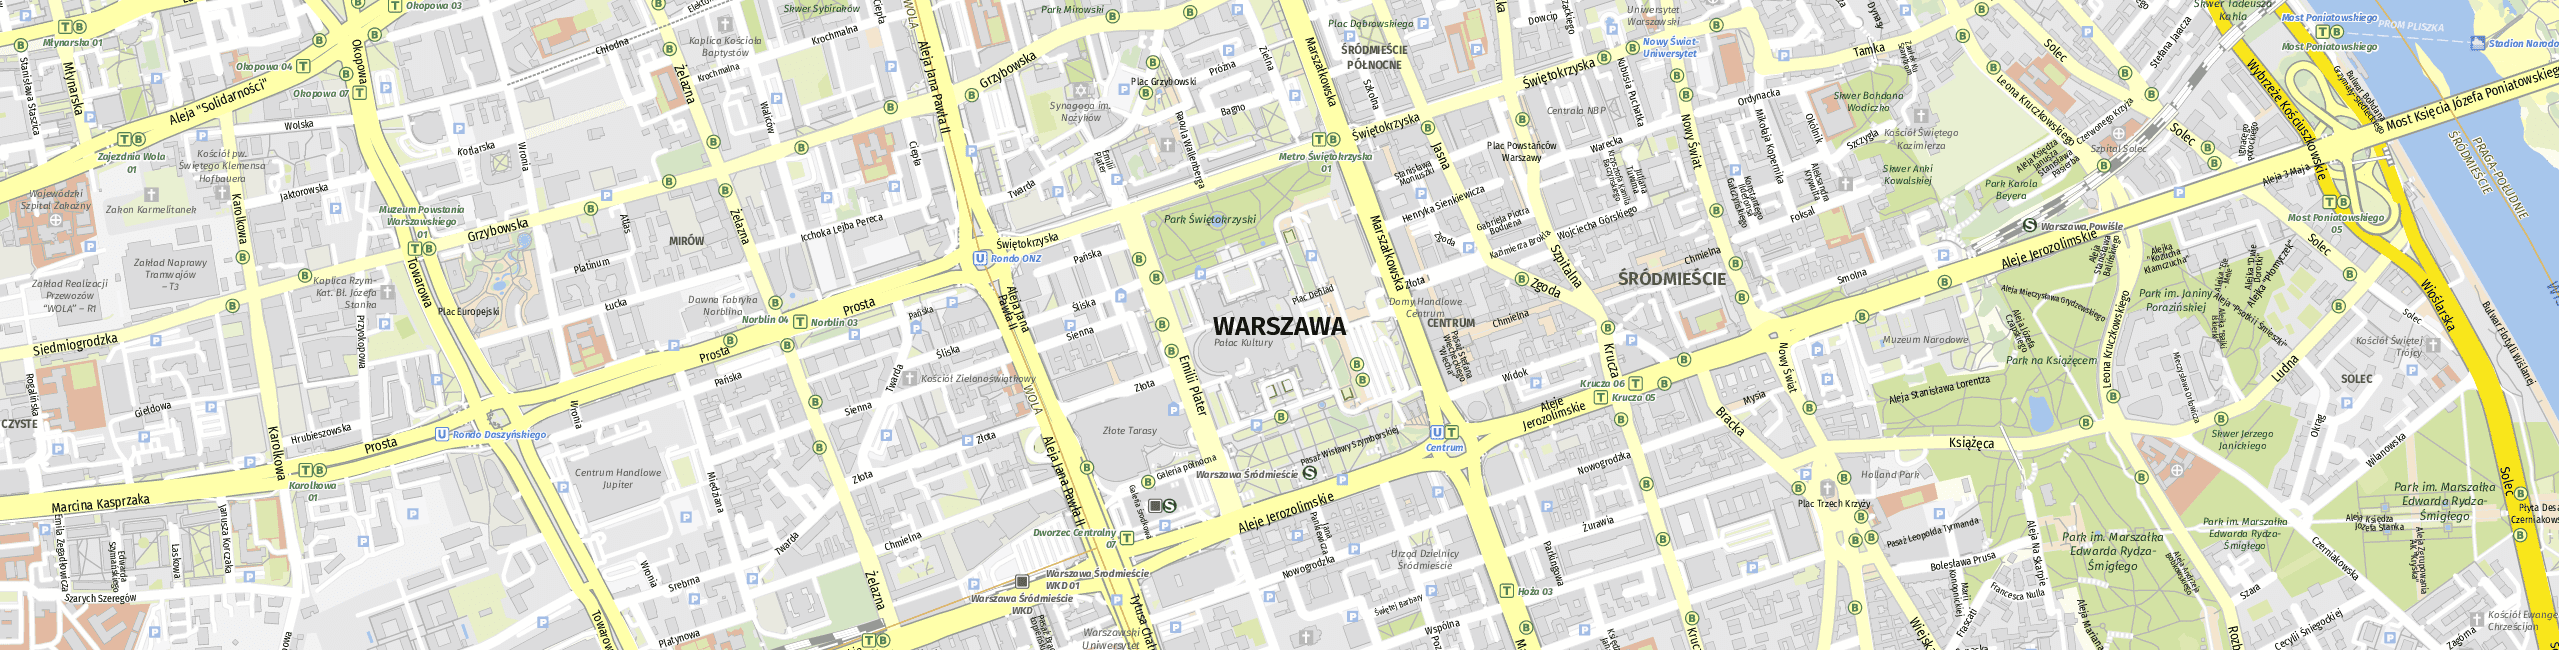 Stadtplan Warsaw zum Downloaden.